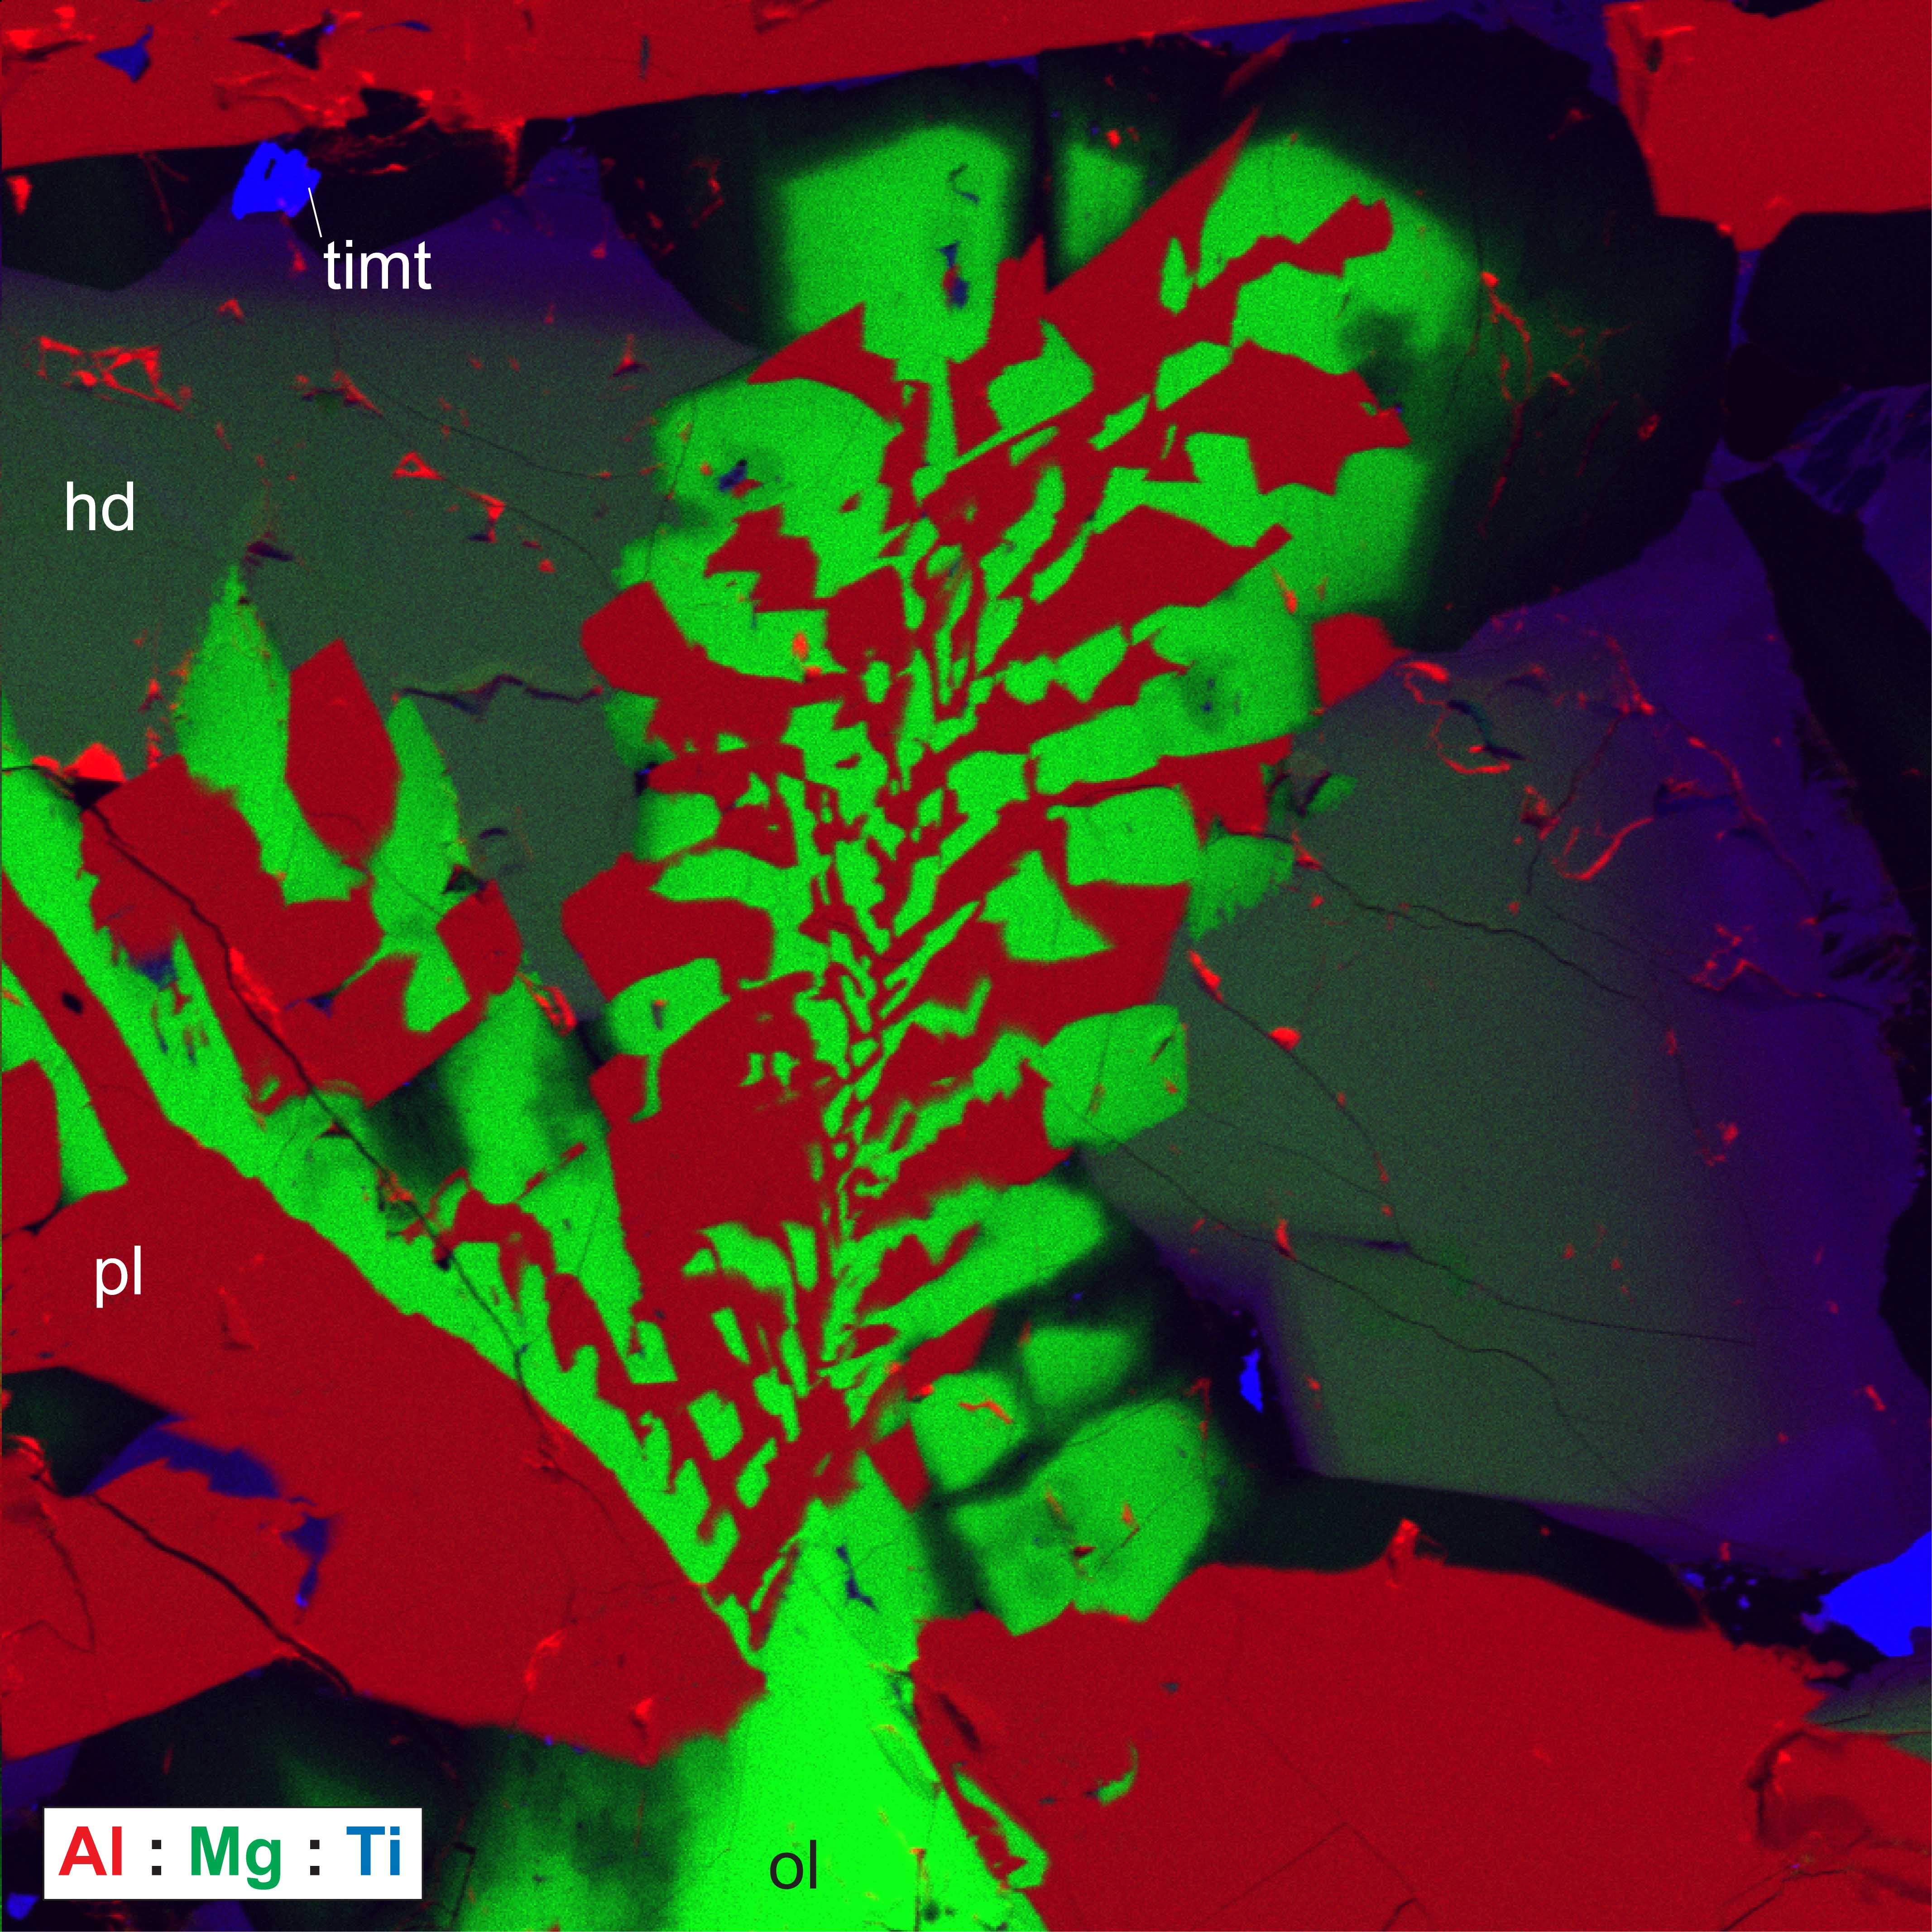 RGB image combining aluminum, magnesium and titatium x-ray signals